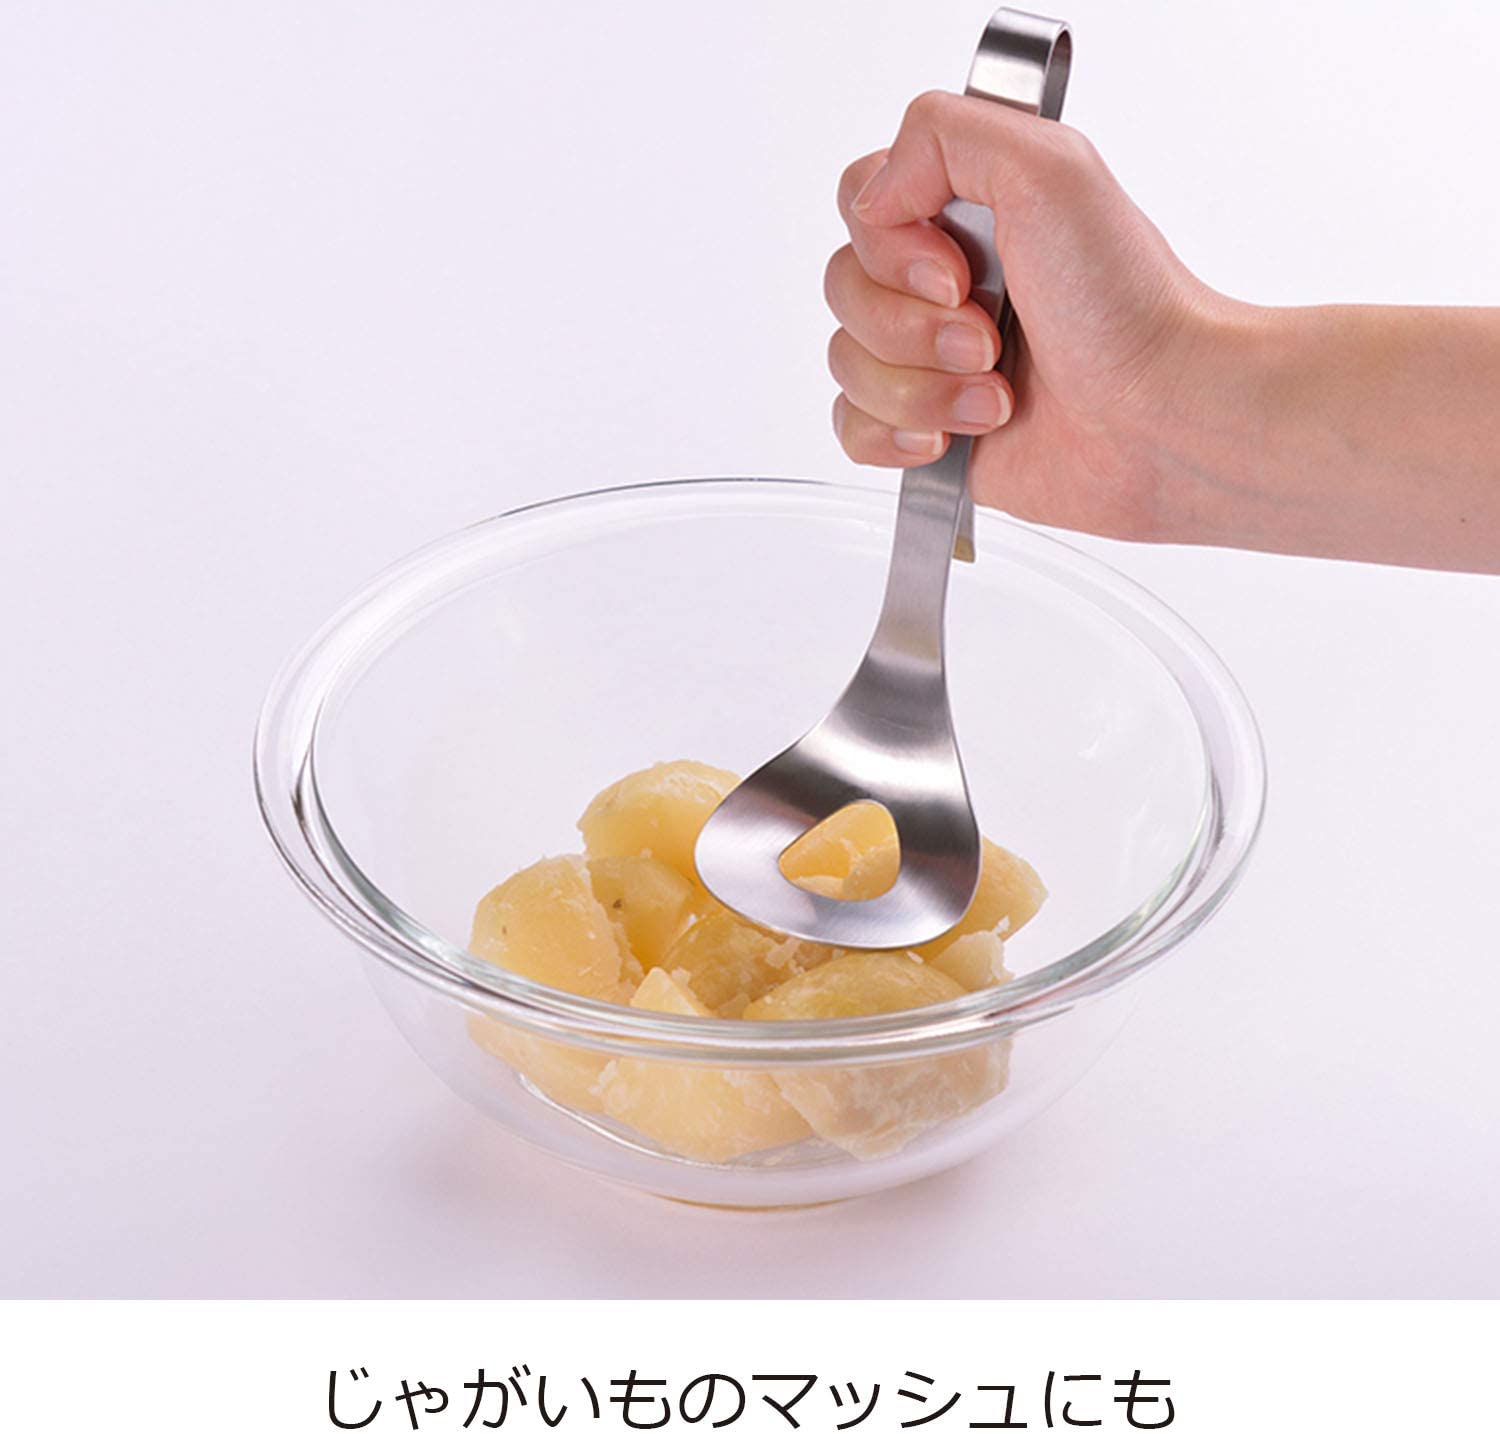 【預購】日本製 擠絞肉丸不銹鋼勺子 - Cnjpkitchen ❤️ 🇯🇵日本廚具 家居生活雜貨店